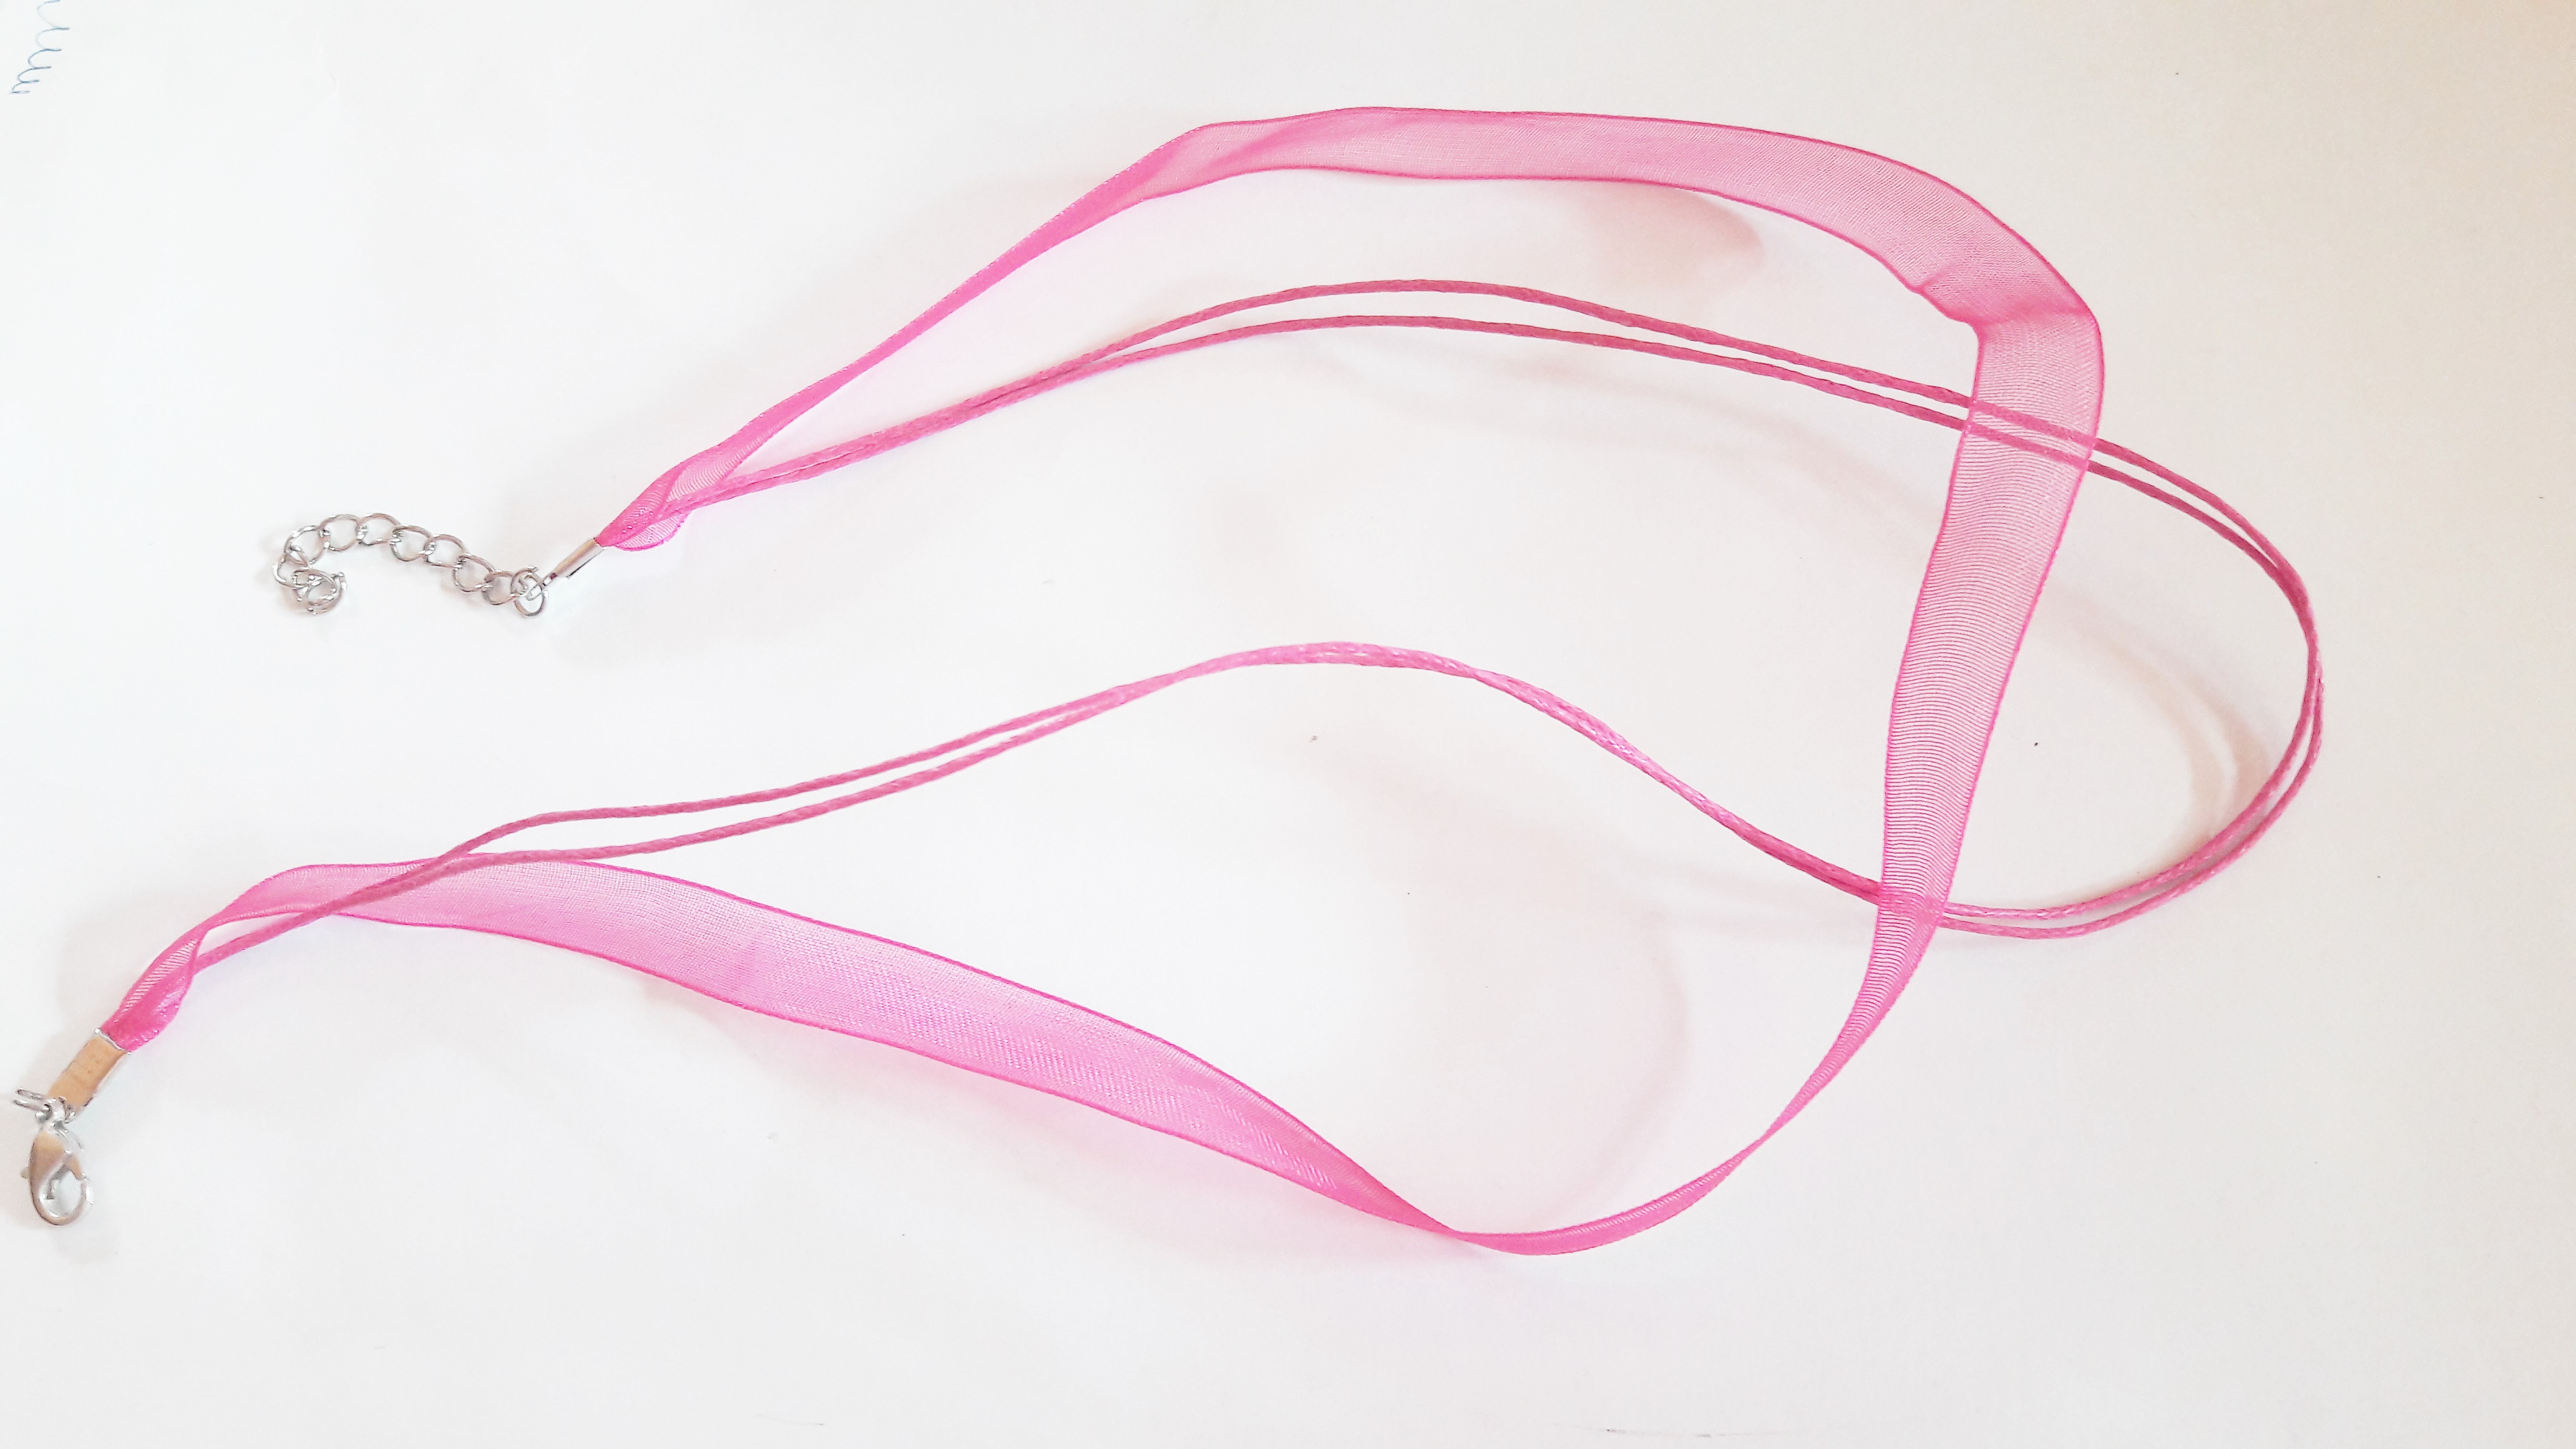 Organza nyakláncalap, sötét rózsaszín, 42 cm